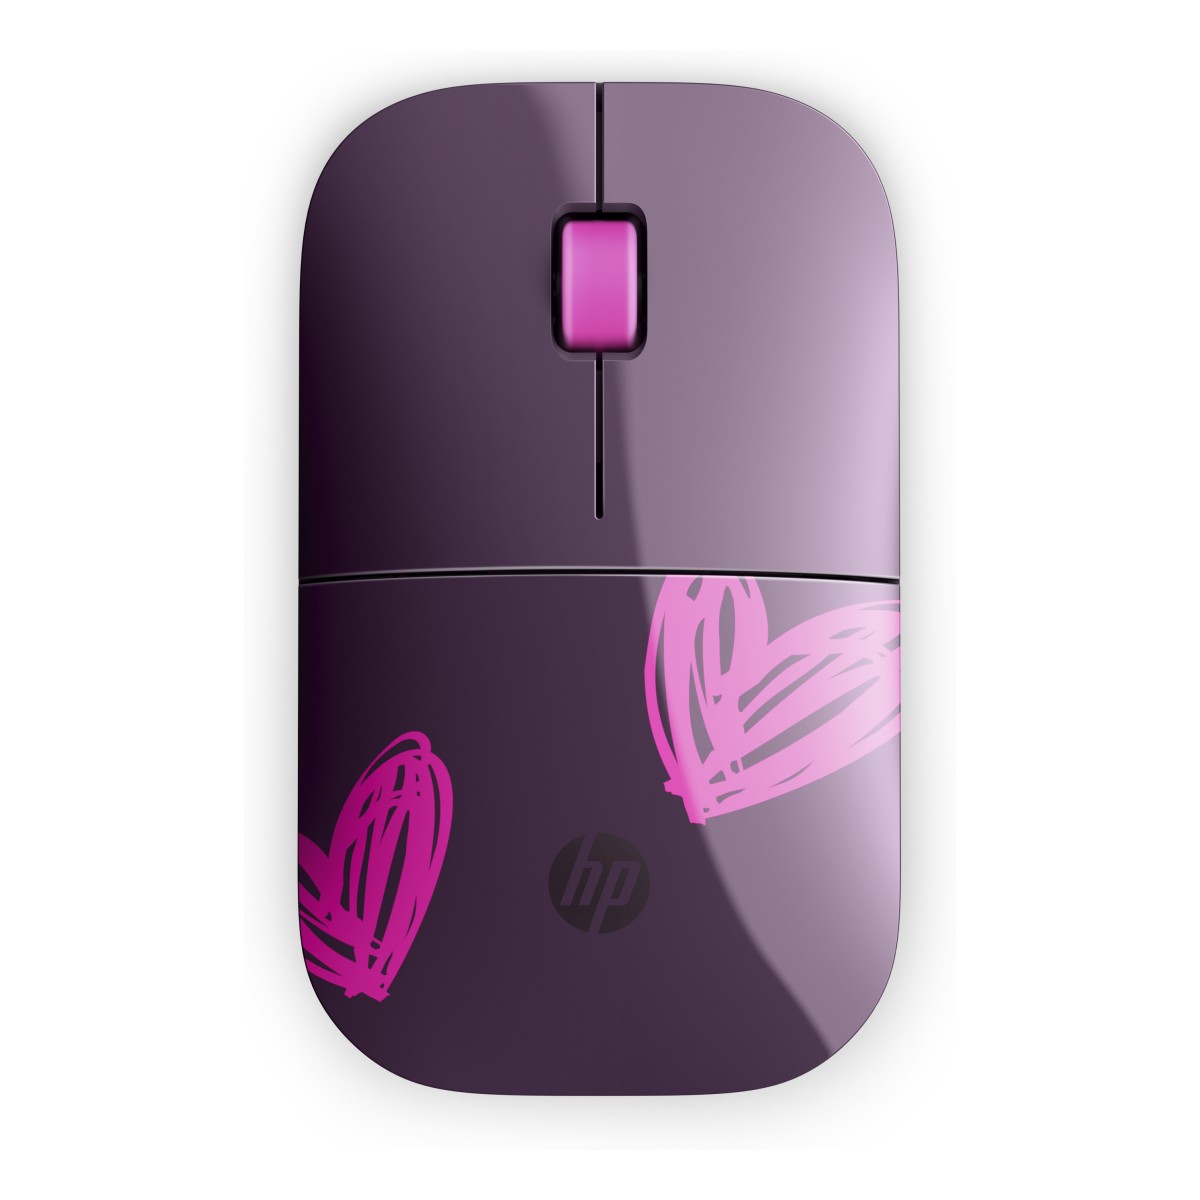 Bezdrôtová myš HP Z3700 - hearts (1CA96AA)